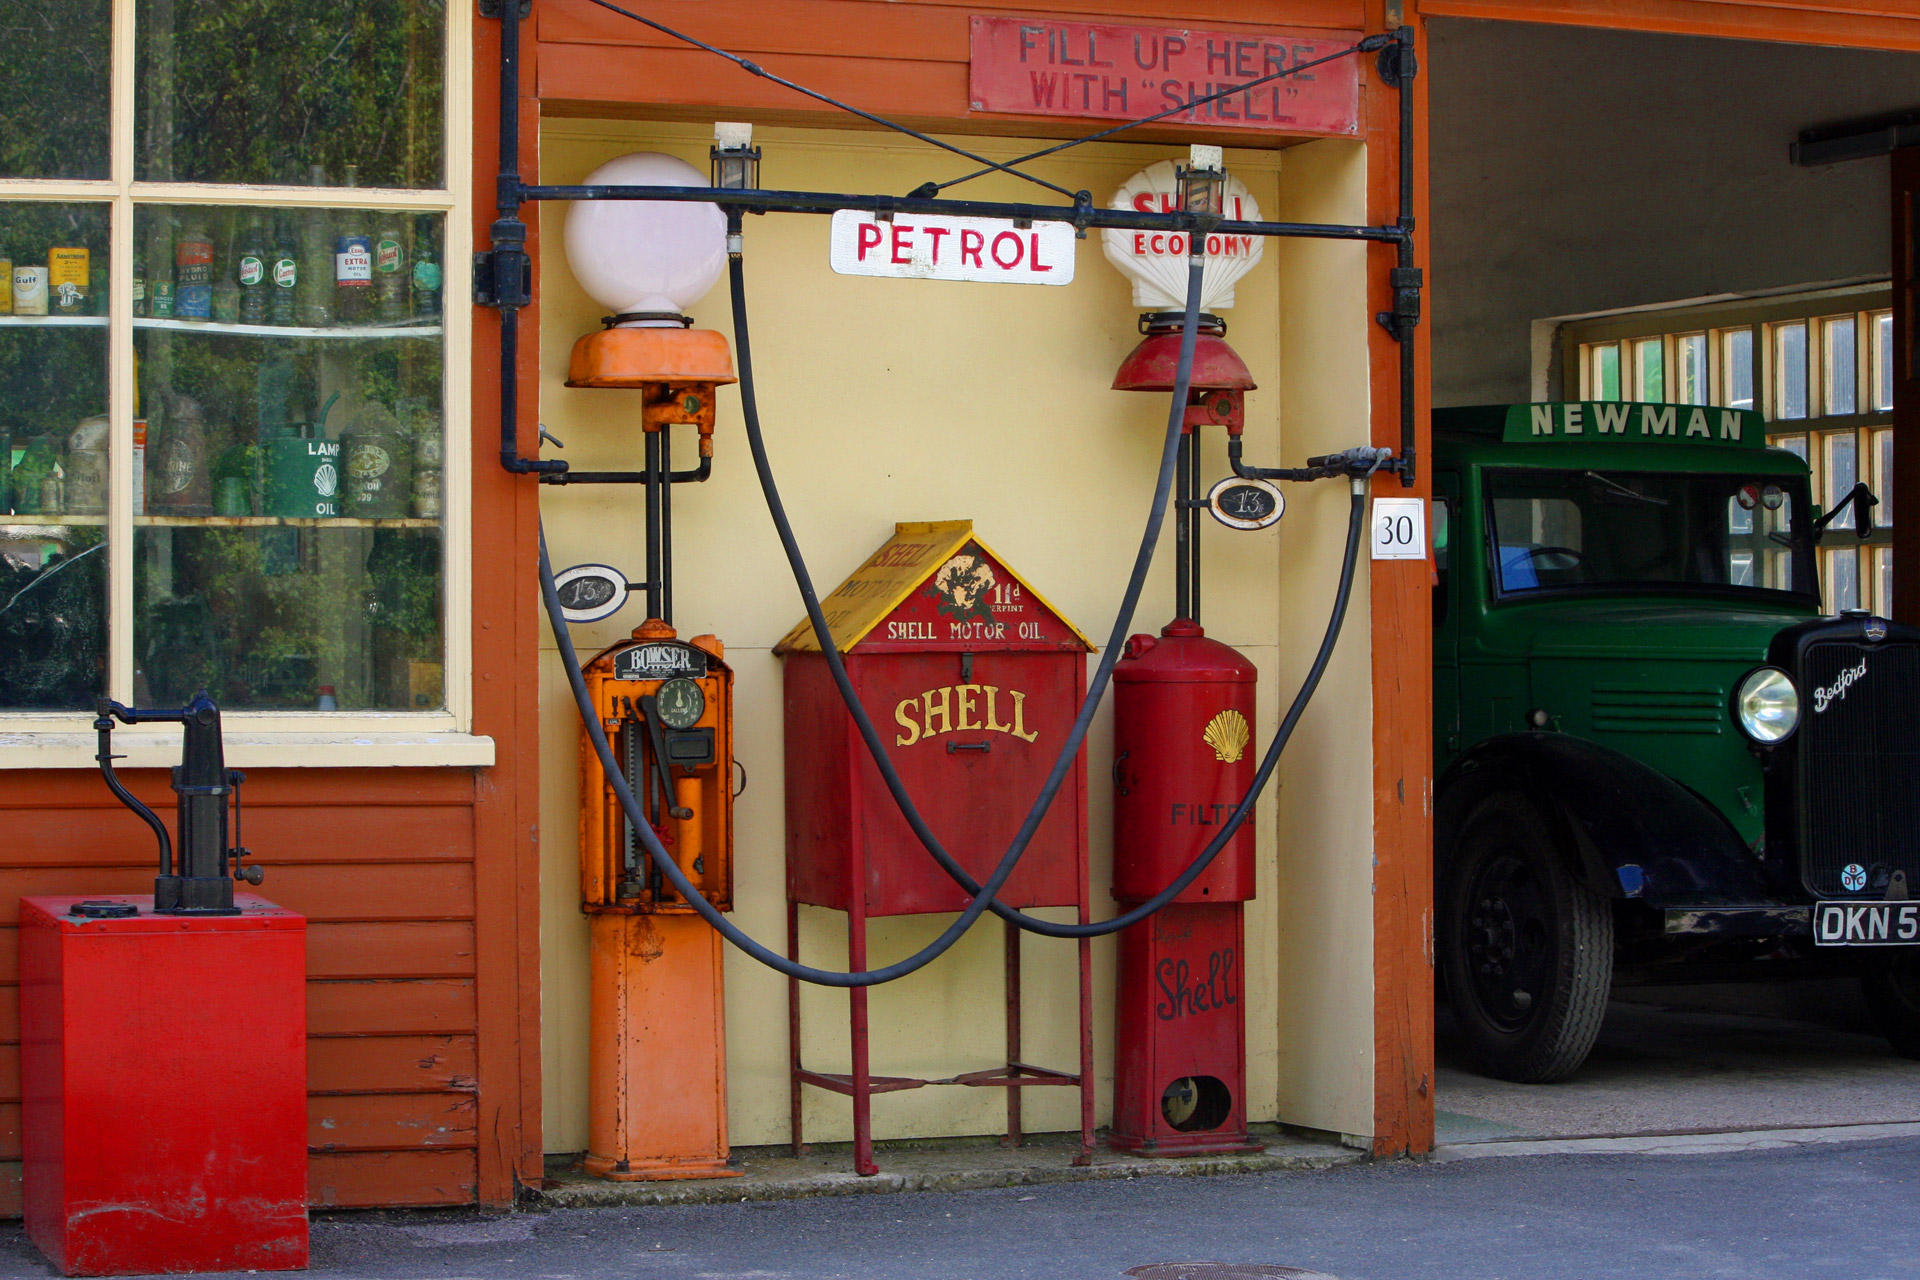 Vintage petrol filling station or gas station